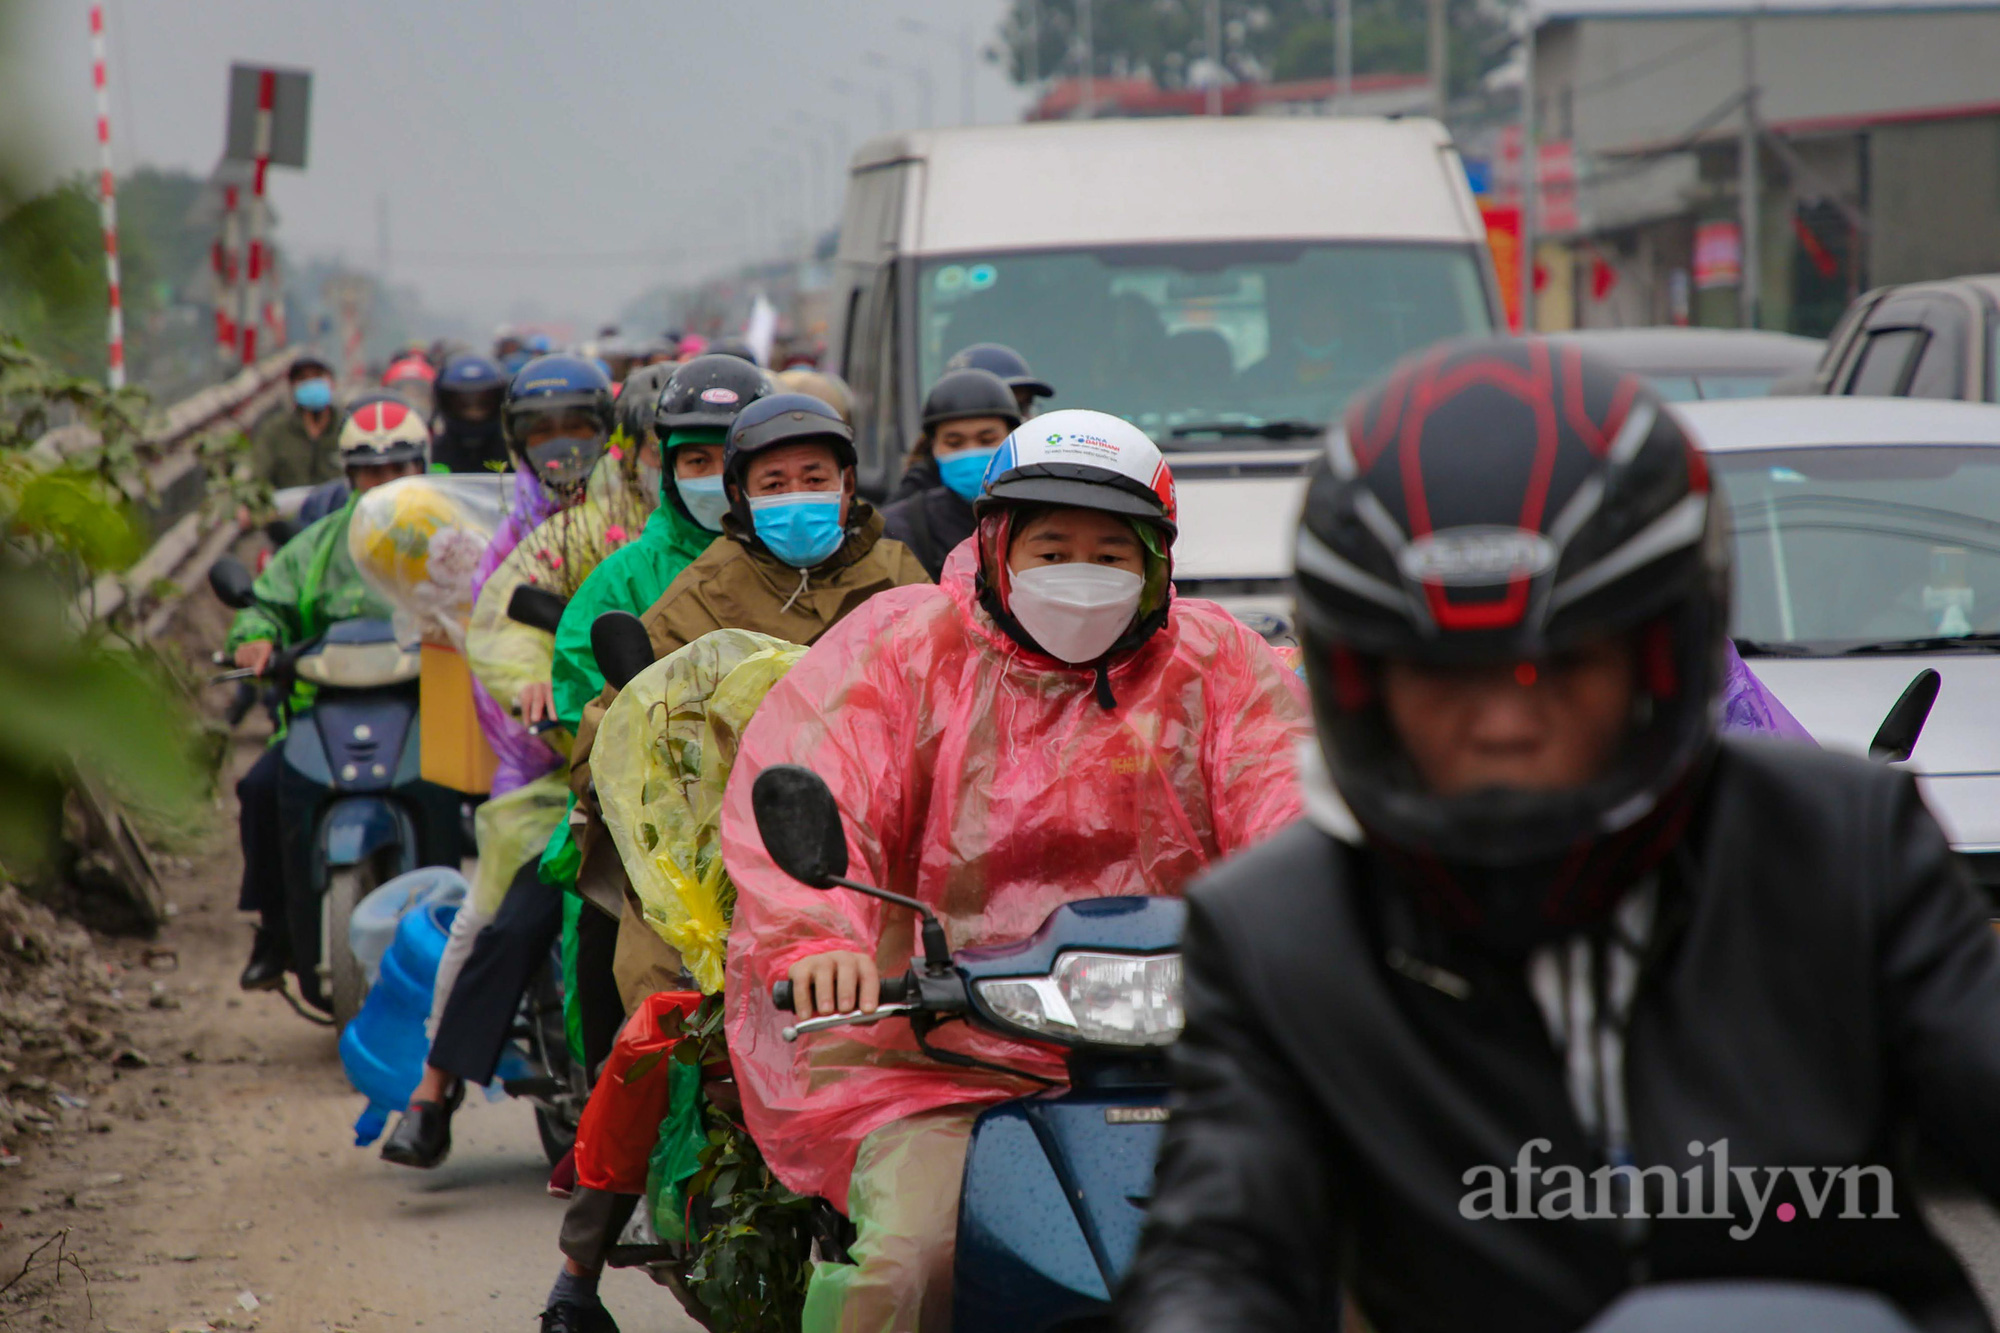 Hà Nội: Hàng nghìn người chạy xe máy trùm kín áo mưa, ùn ùn rời phố về quê ăn Tết - Ảnh 10.